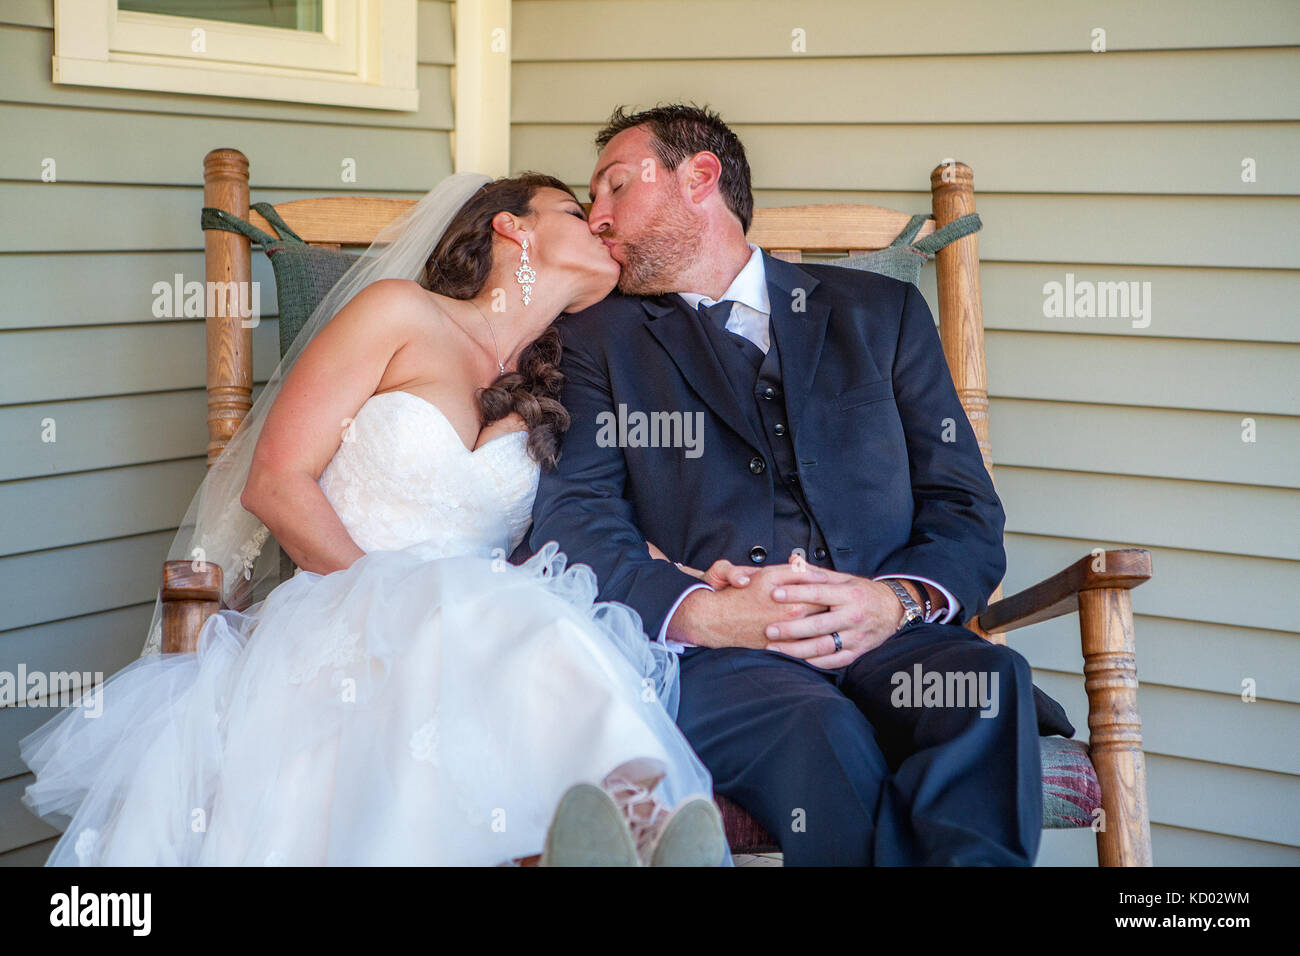 Brautpaar sitzen in einem Schaukelstuhl und tragen Ihre tuxedo Wedding Dress. Stockfoto